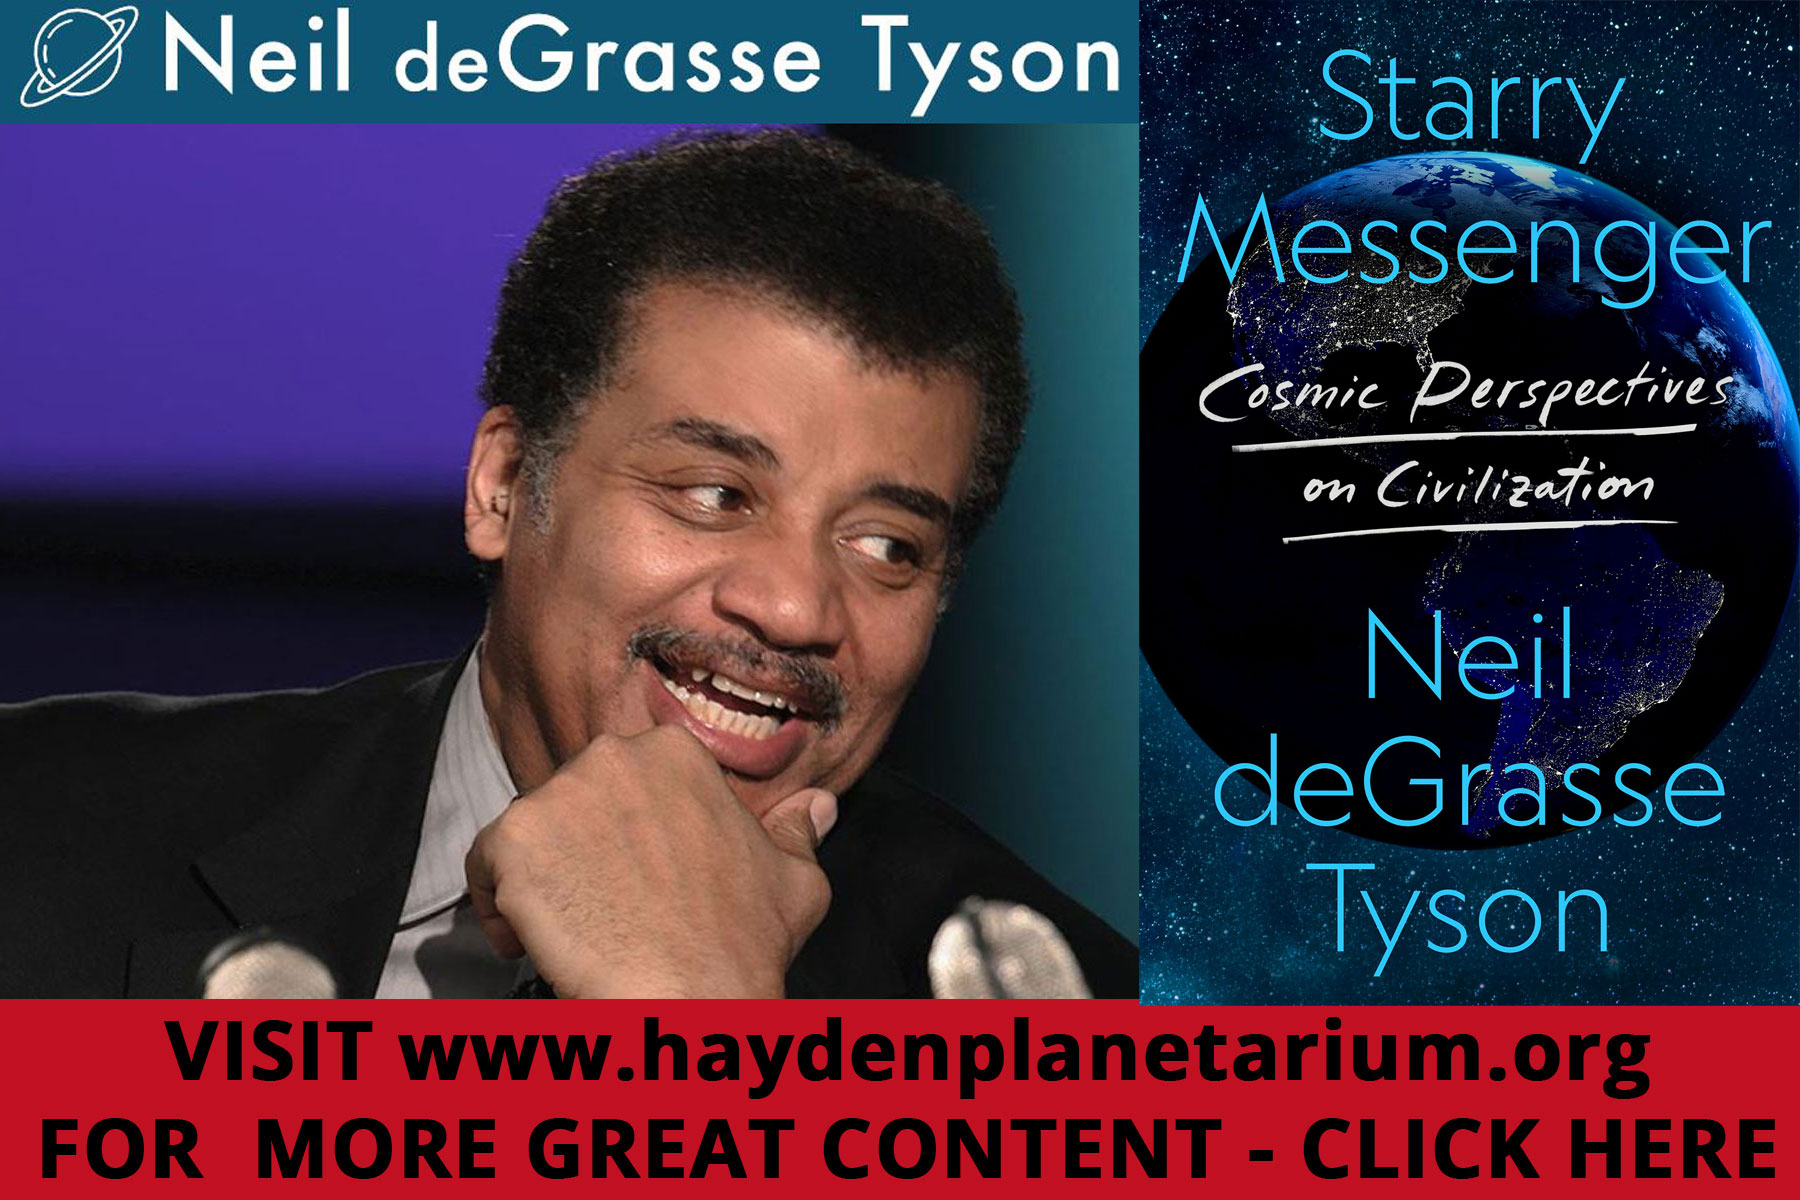 HarlemAmerica-Neil_deGrasse_Tyson-website-link-2